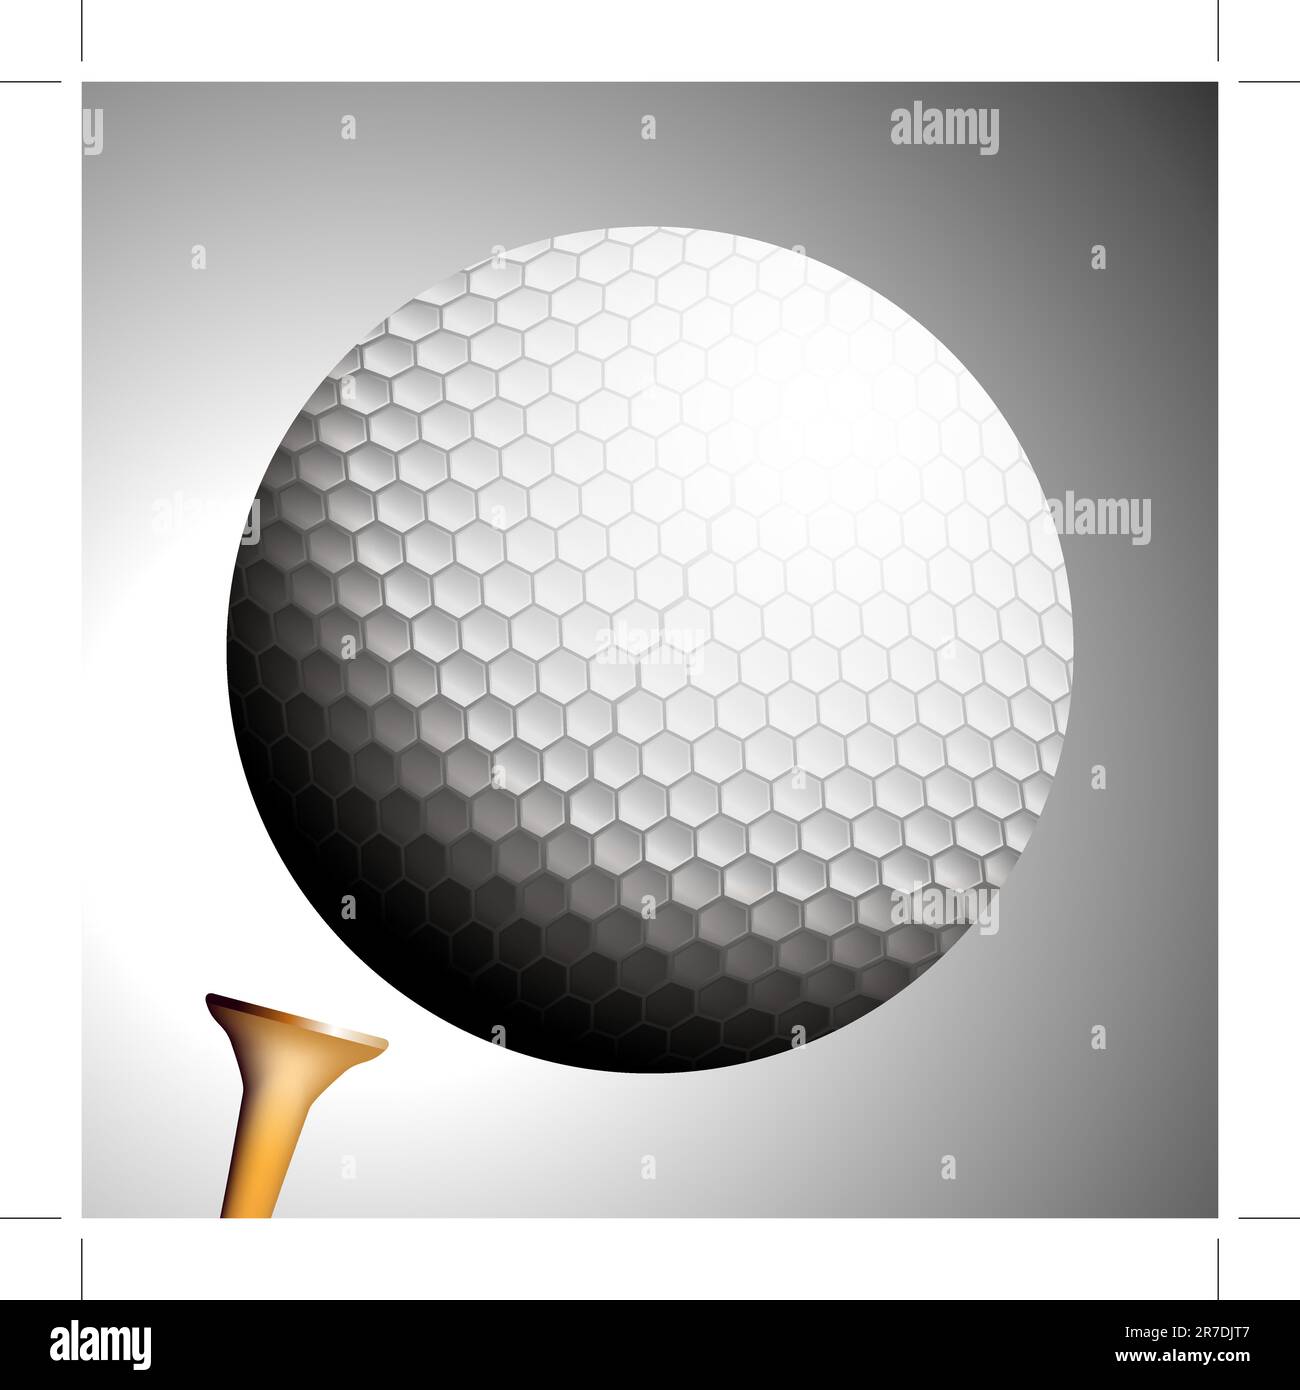 Ein Bild von einem Golf Ball startet einen Abschlag. Stock Vektor